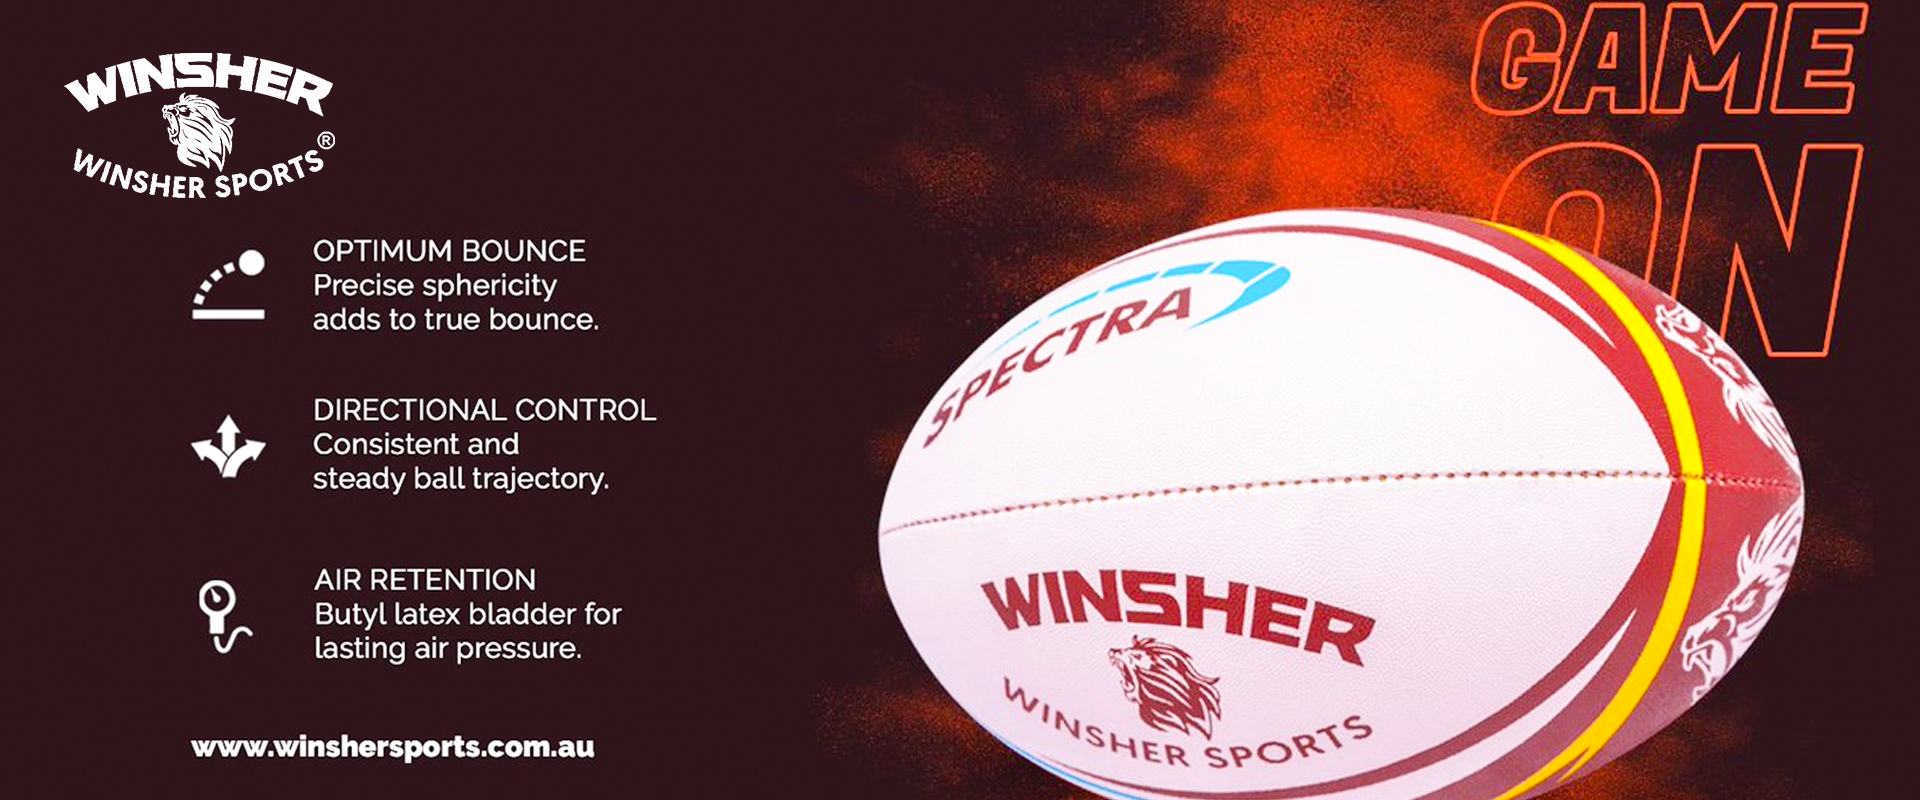 Winsher Sports Banner